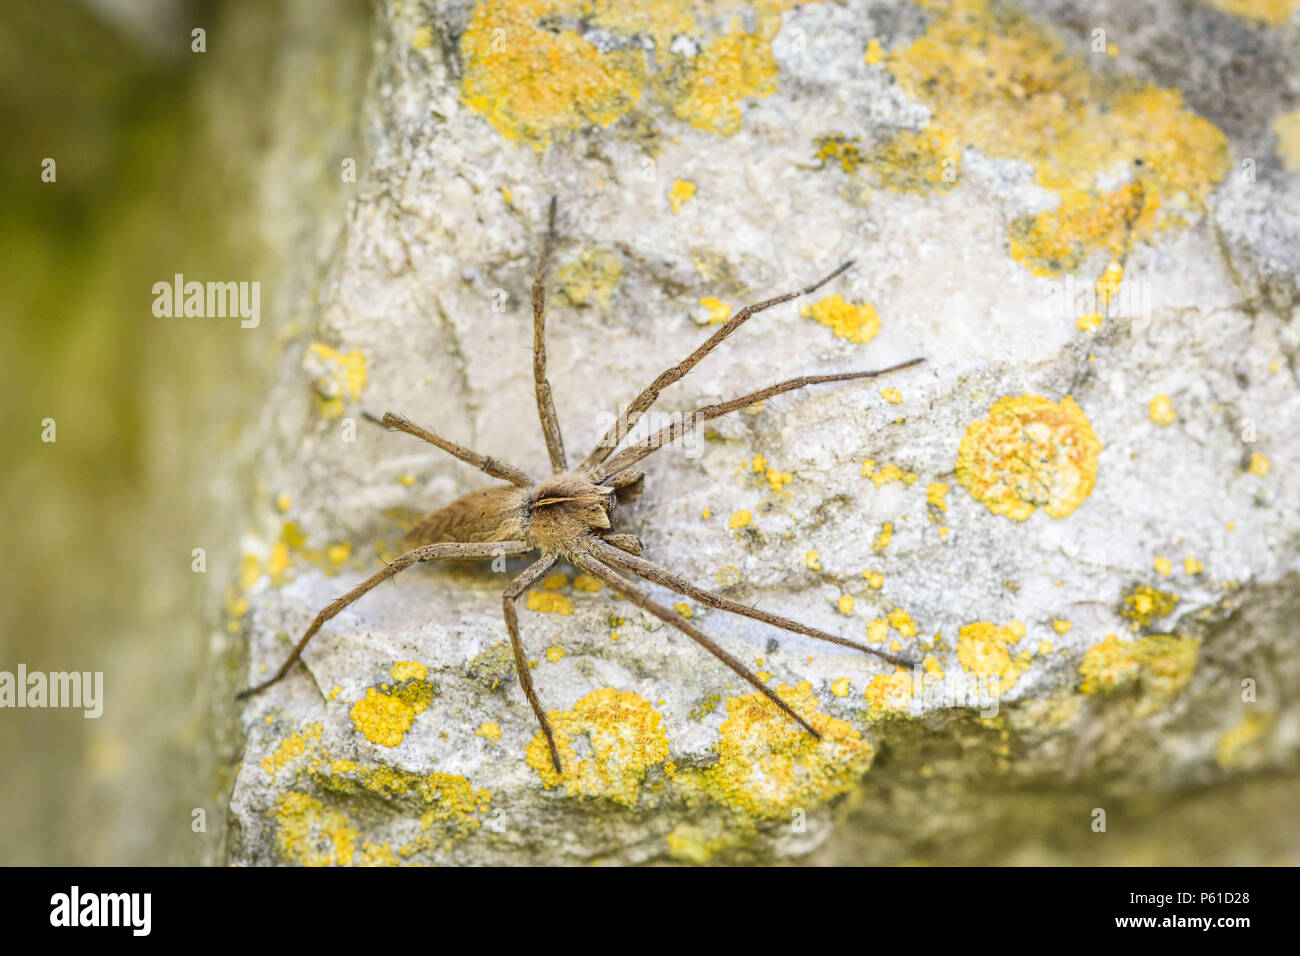 Einsame hobo Spider - Tegenaria agrestis - auf einem Felsen Stockfoto